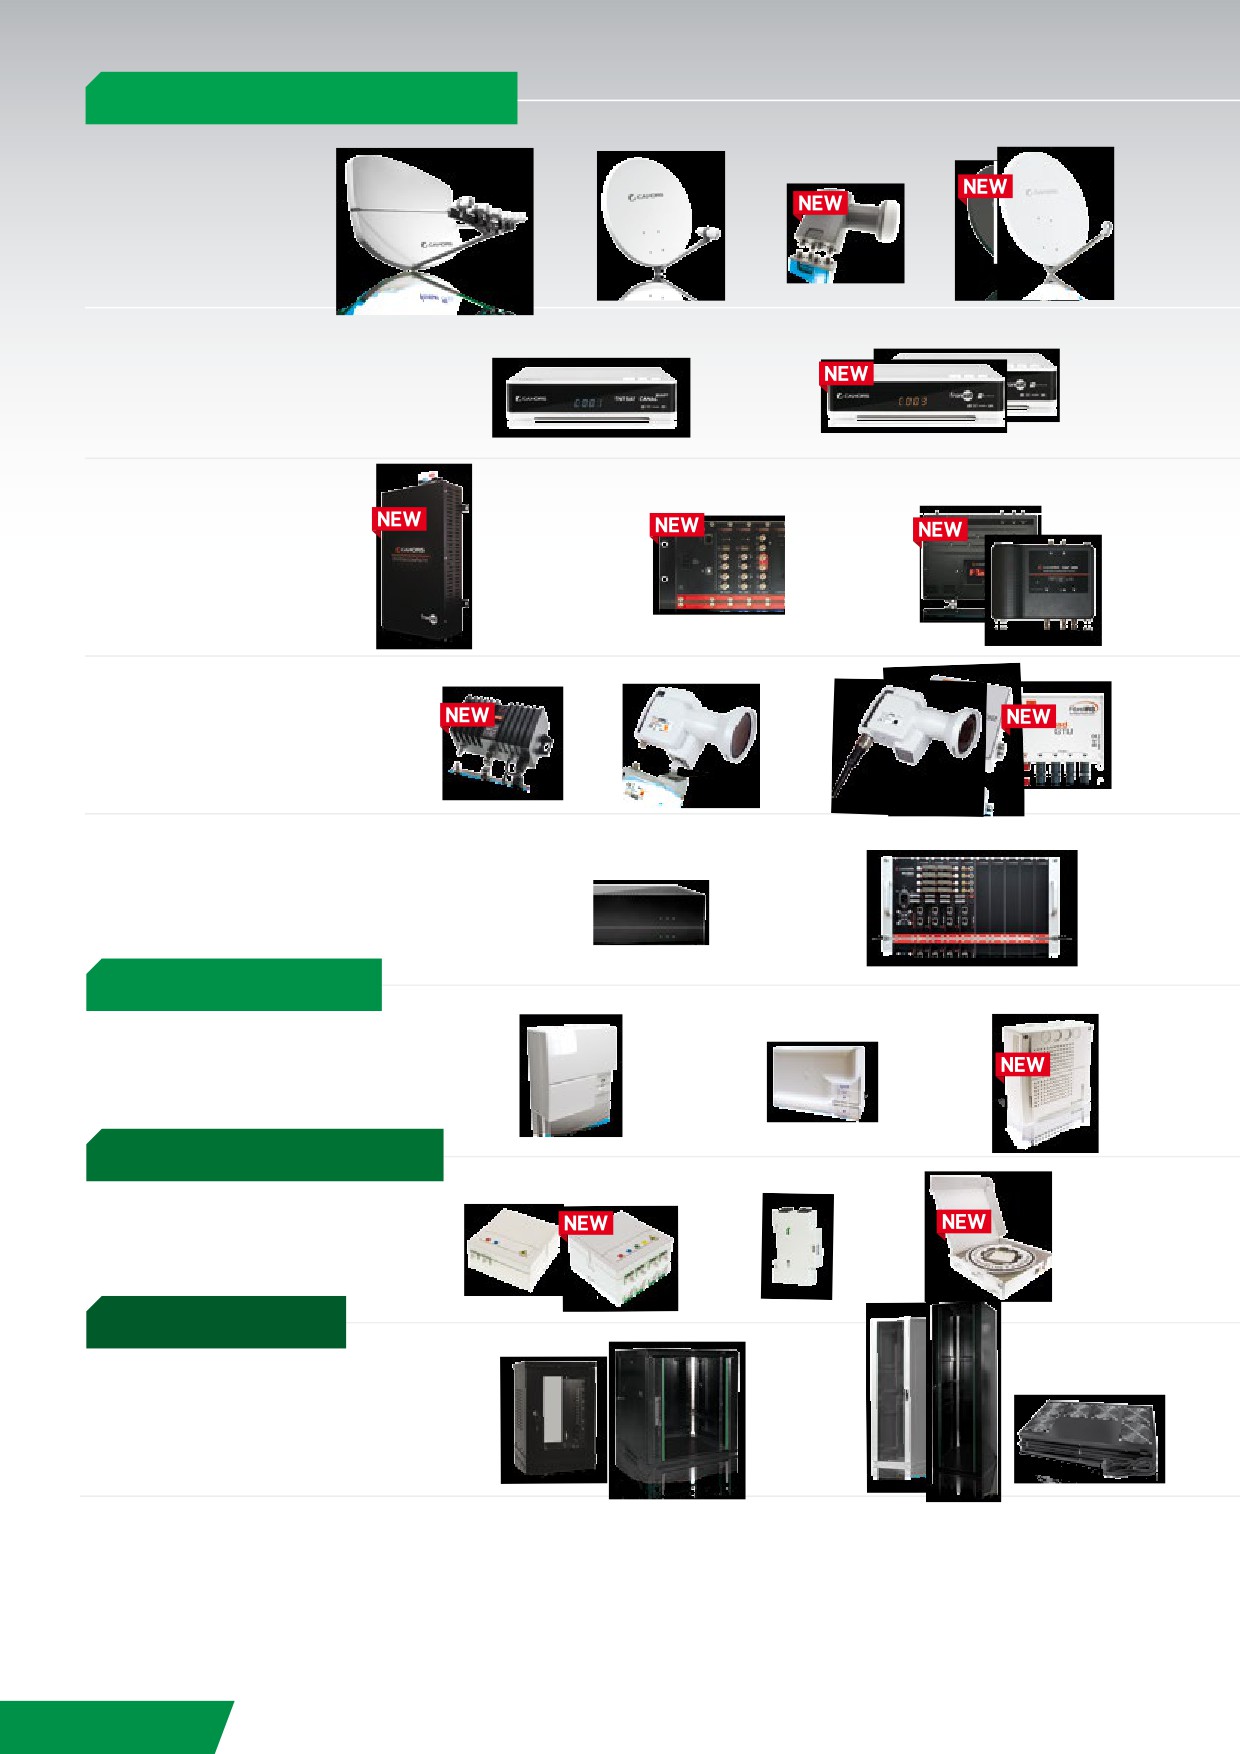 Plastron format 45x45 - 4 sorties TV-Ethernet-téléphones RJ45 et RJ11